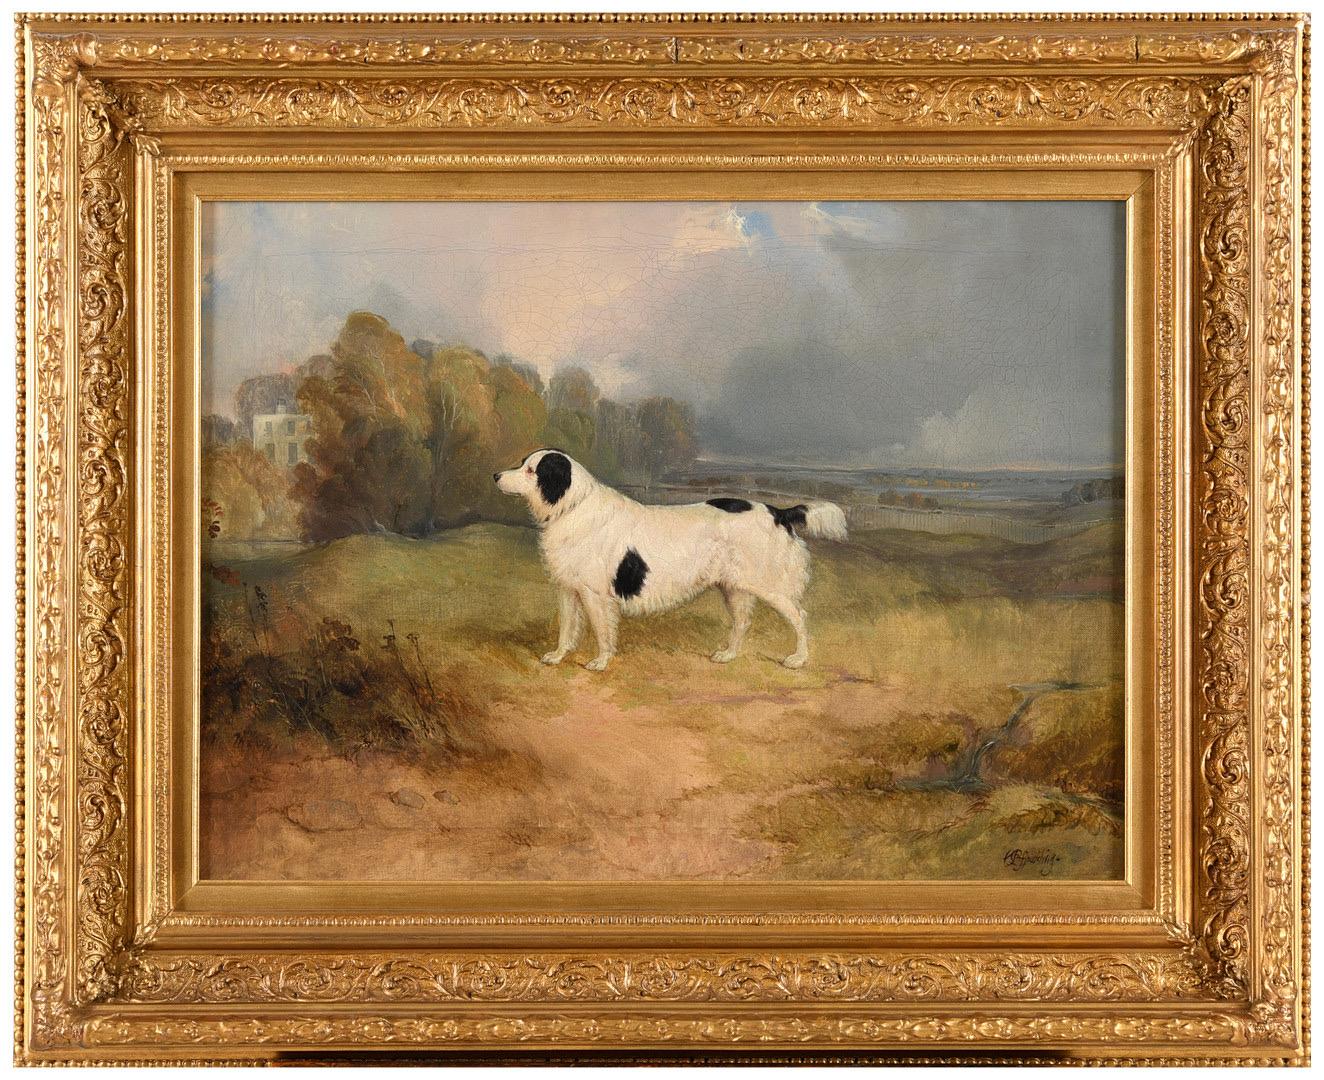 Charles Bilger Spalding Animal Painting – Porträt eines Spanielhundes aus dem 19. Jahrhundert in einer Landschaft, ein Landhaus jenseits des